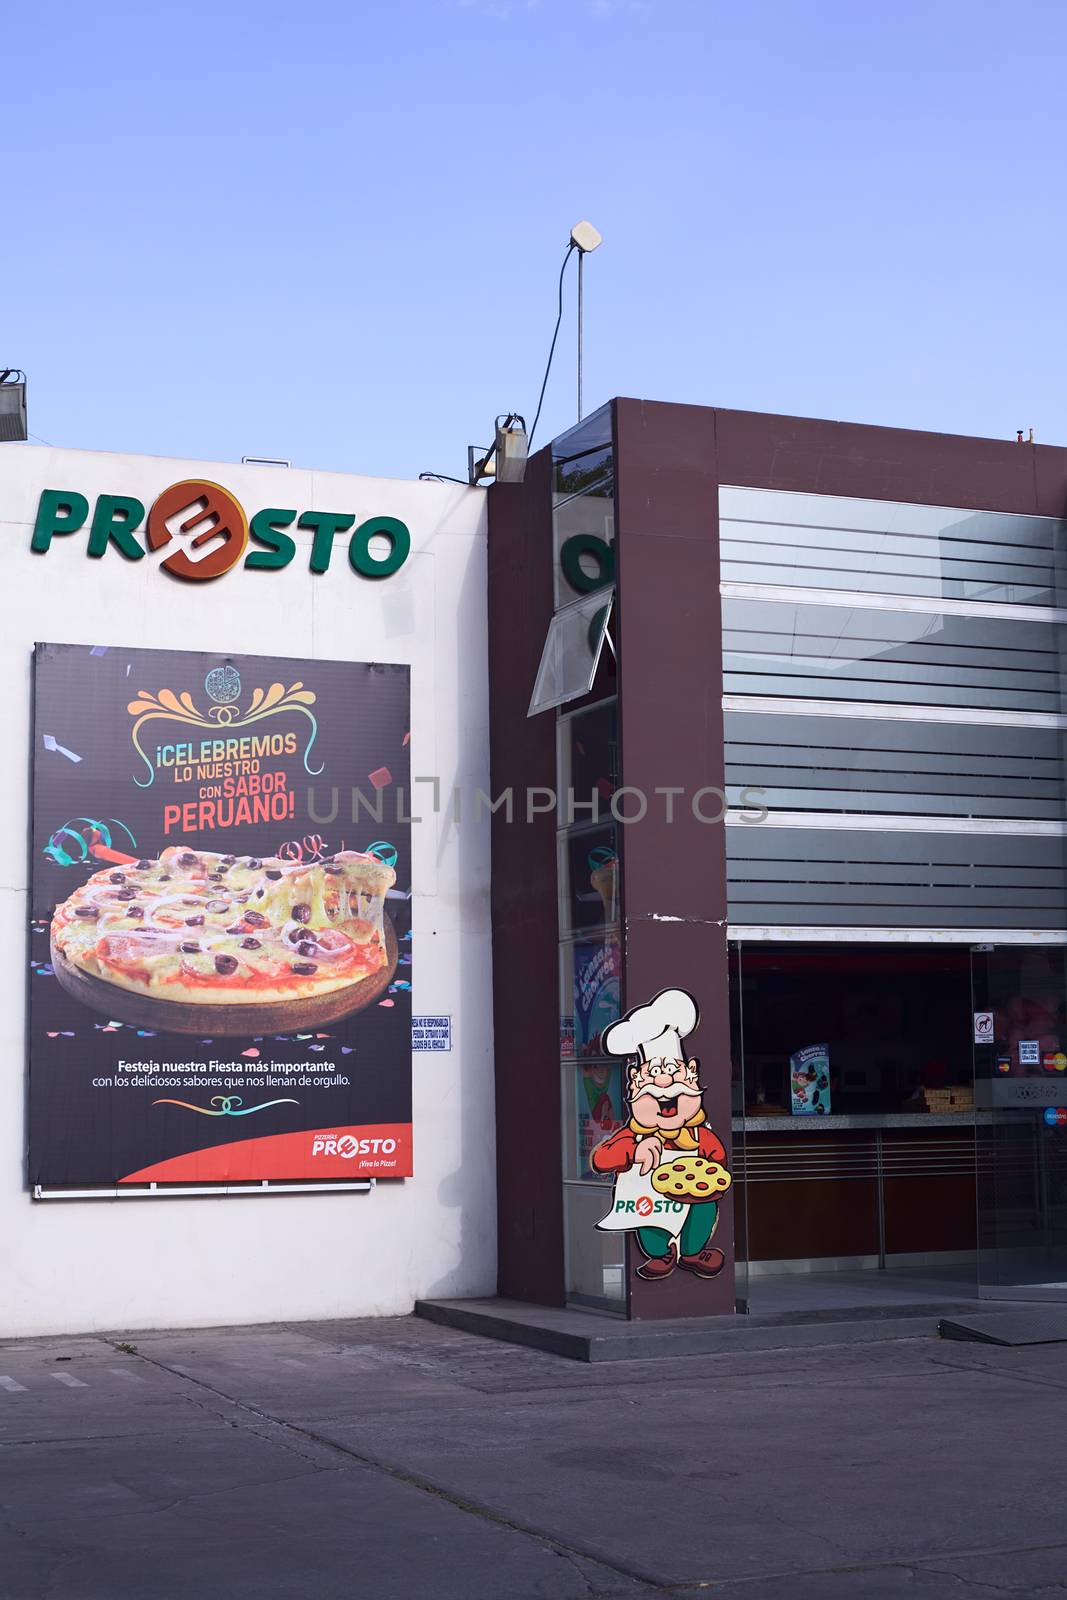 Presto Pizzeria in Arequipa, Peru by ildi